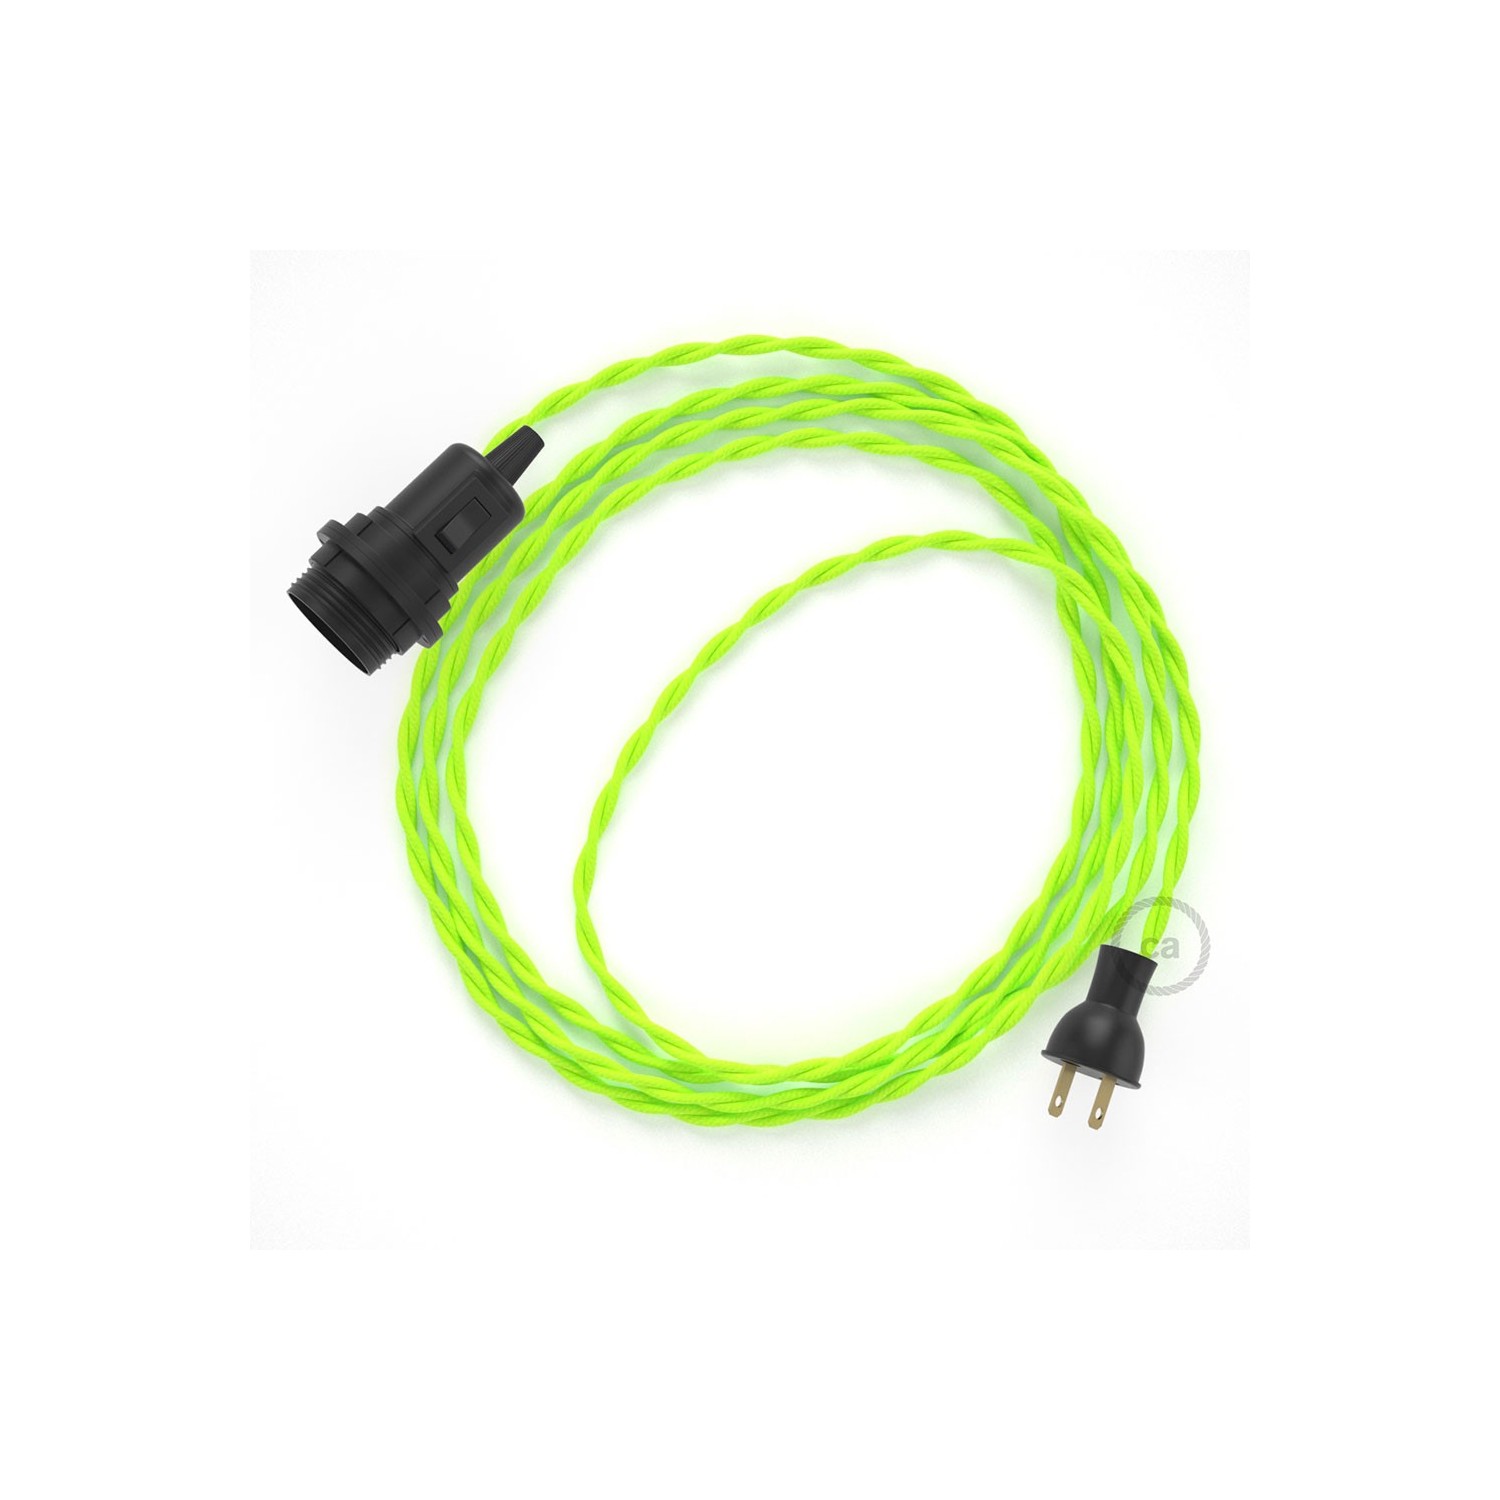 Crea tu Snake para pantalla con cable Fluorescente Amarillo TF10, socket y enchufe, y trae la luz donde tu quieras.